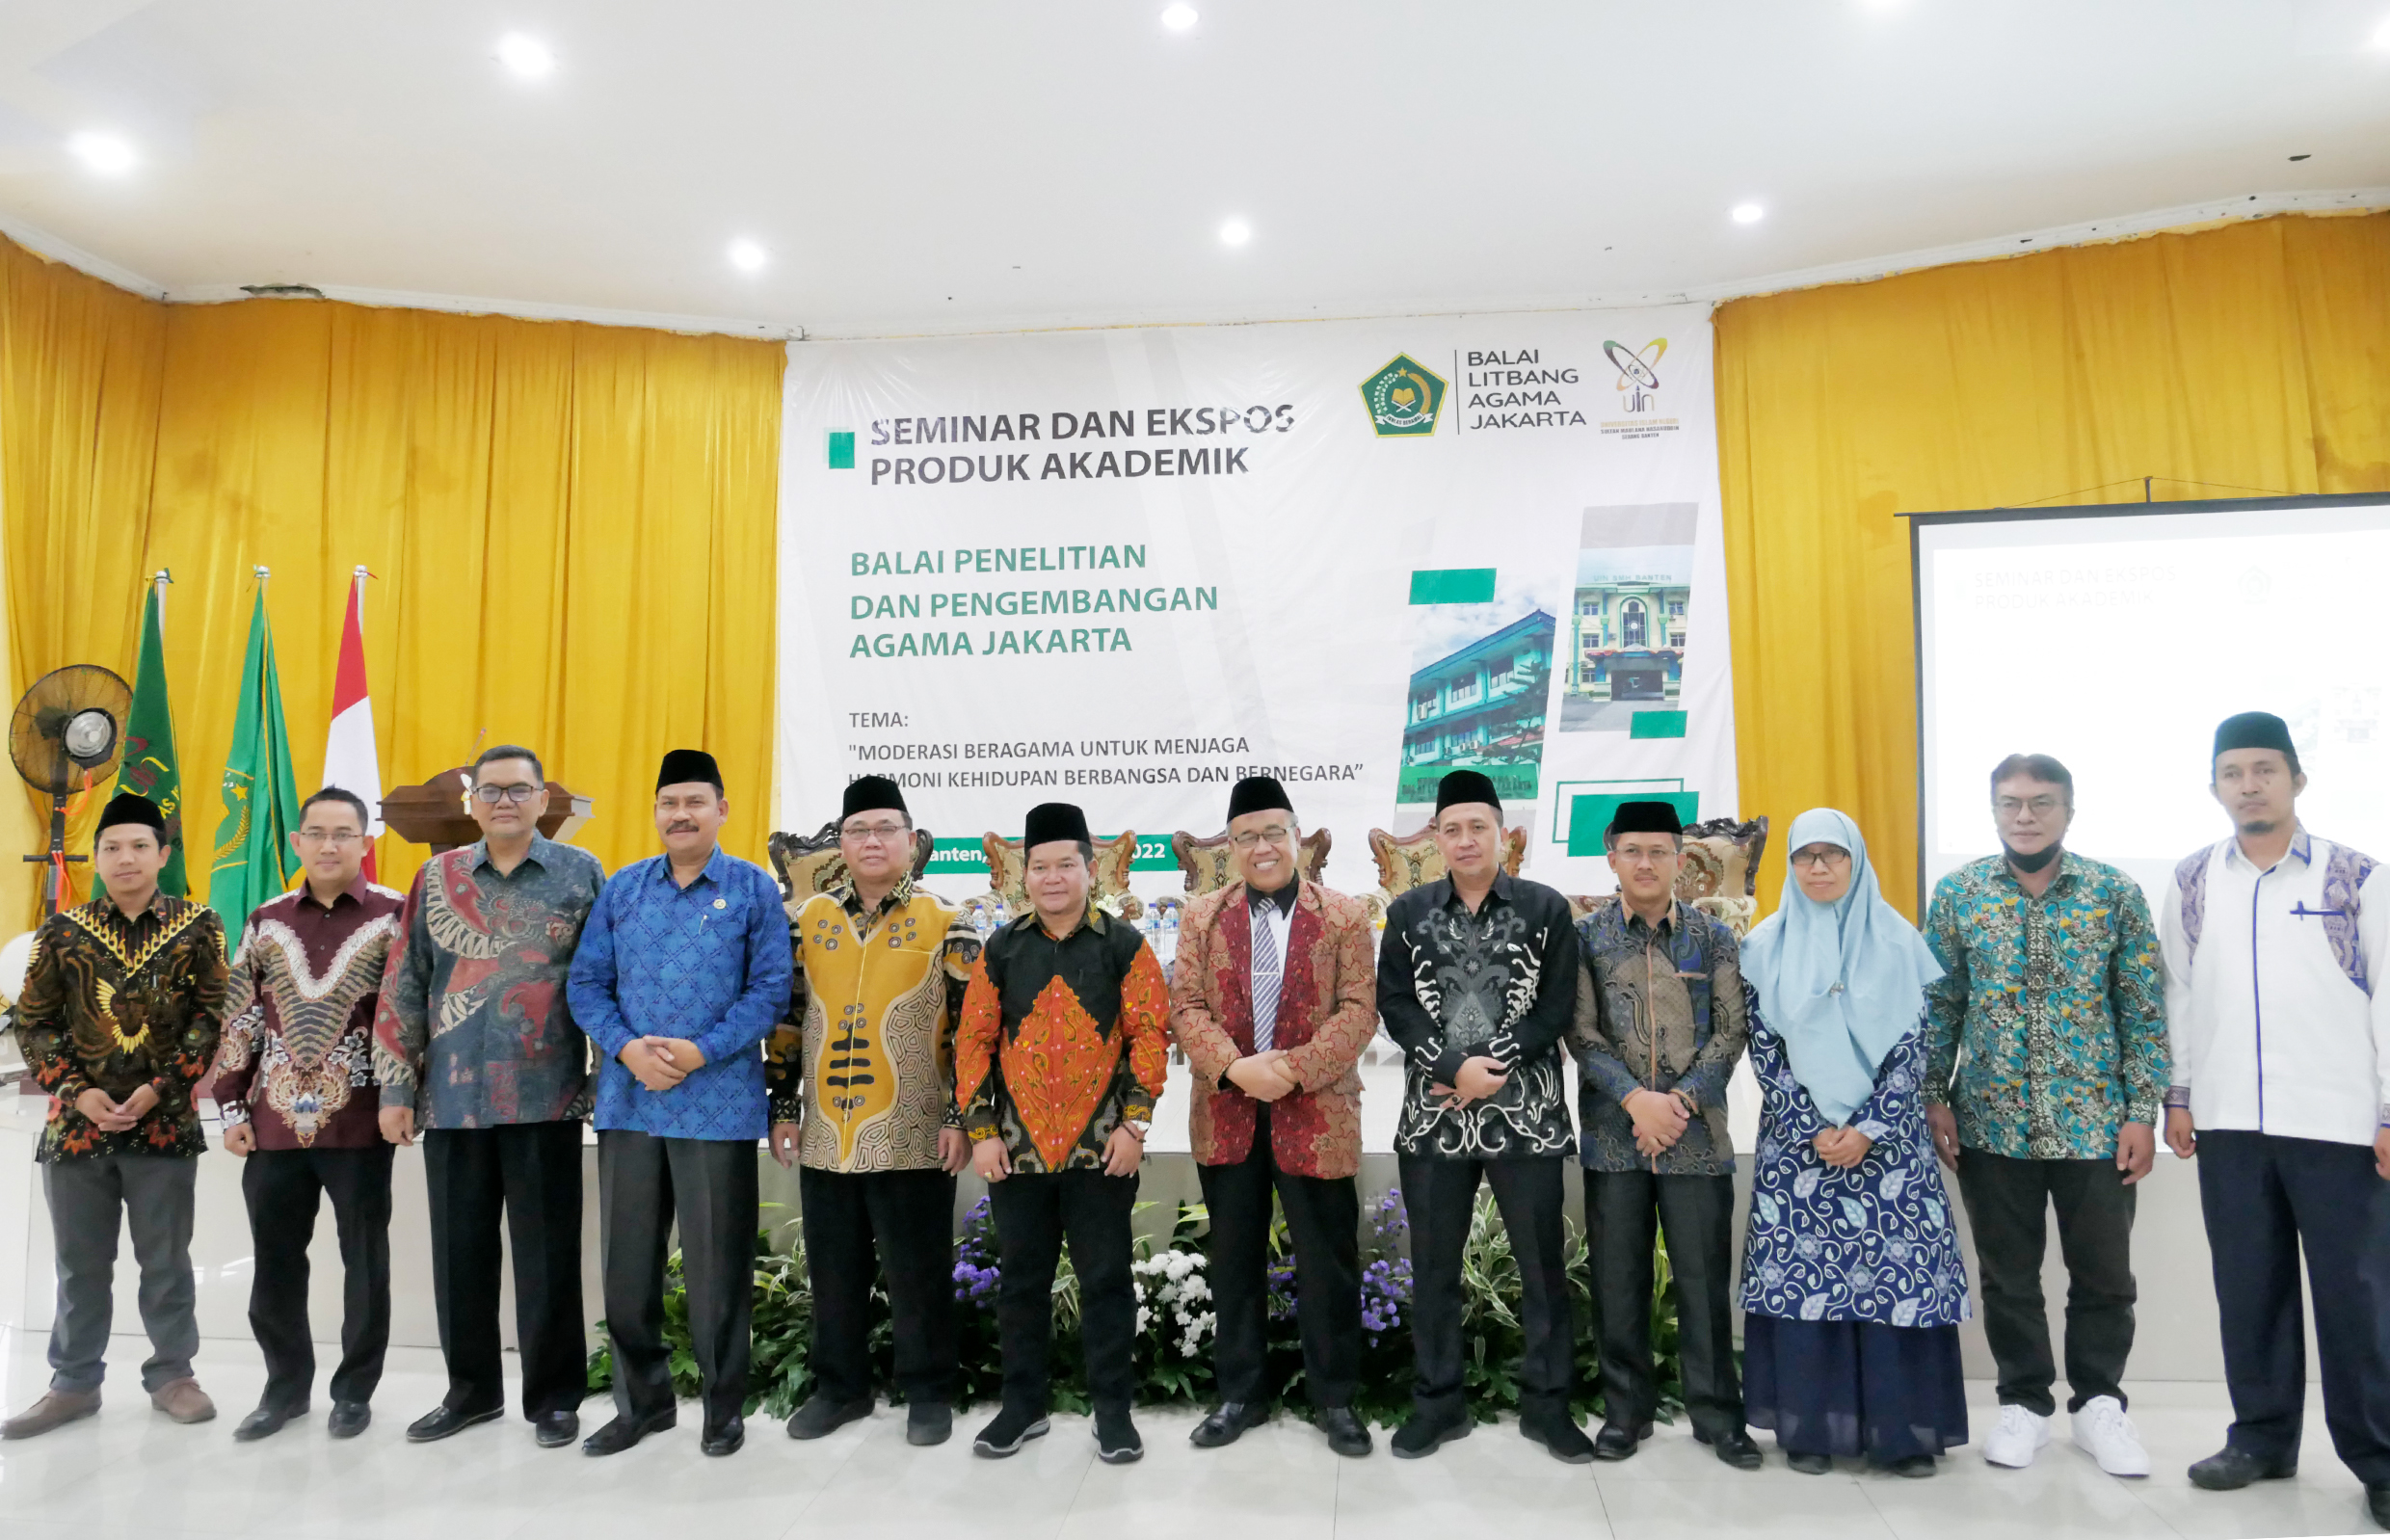 Lebih Dari 200 Mahasiswa dan Akademisi Hadiri Seminar Dan Ekspos Produk Akademik Balai Litbang Agama Jakarta di UIN Banten.